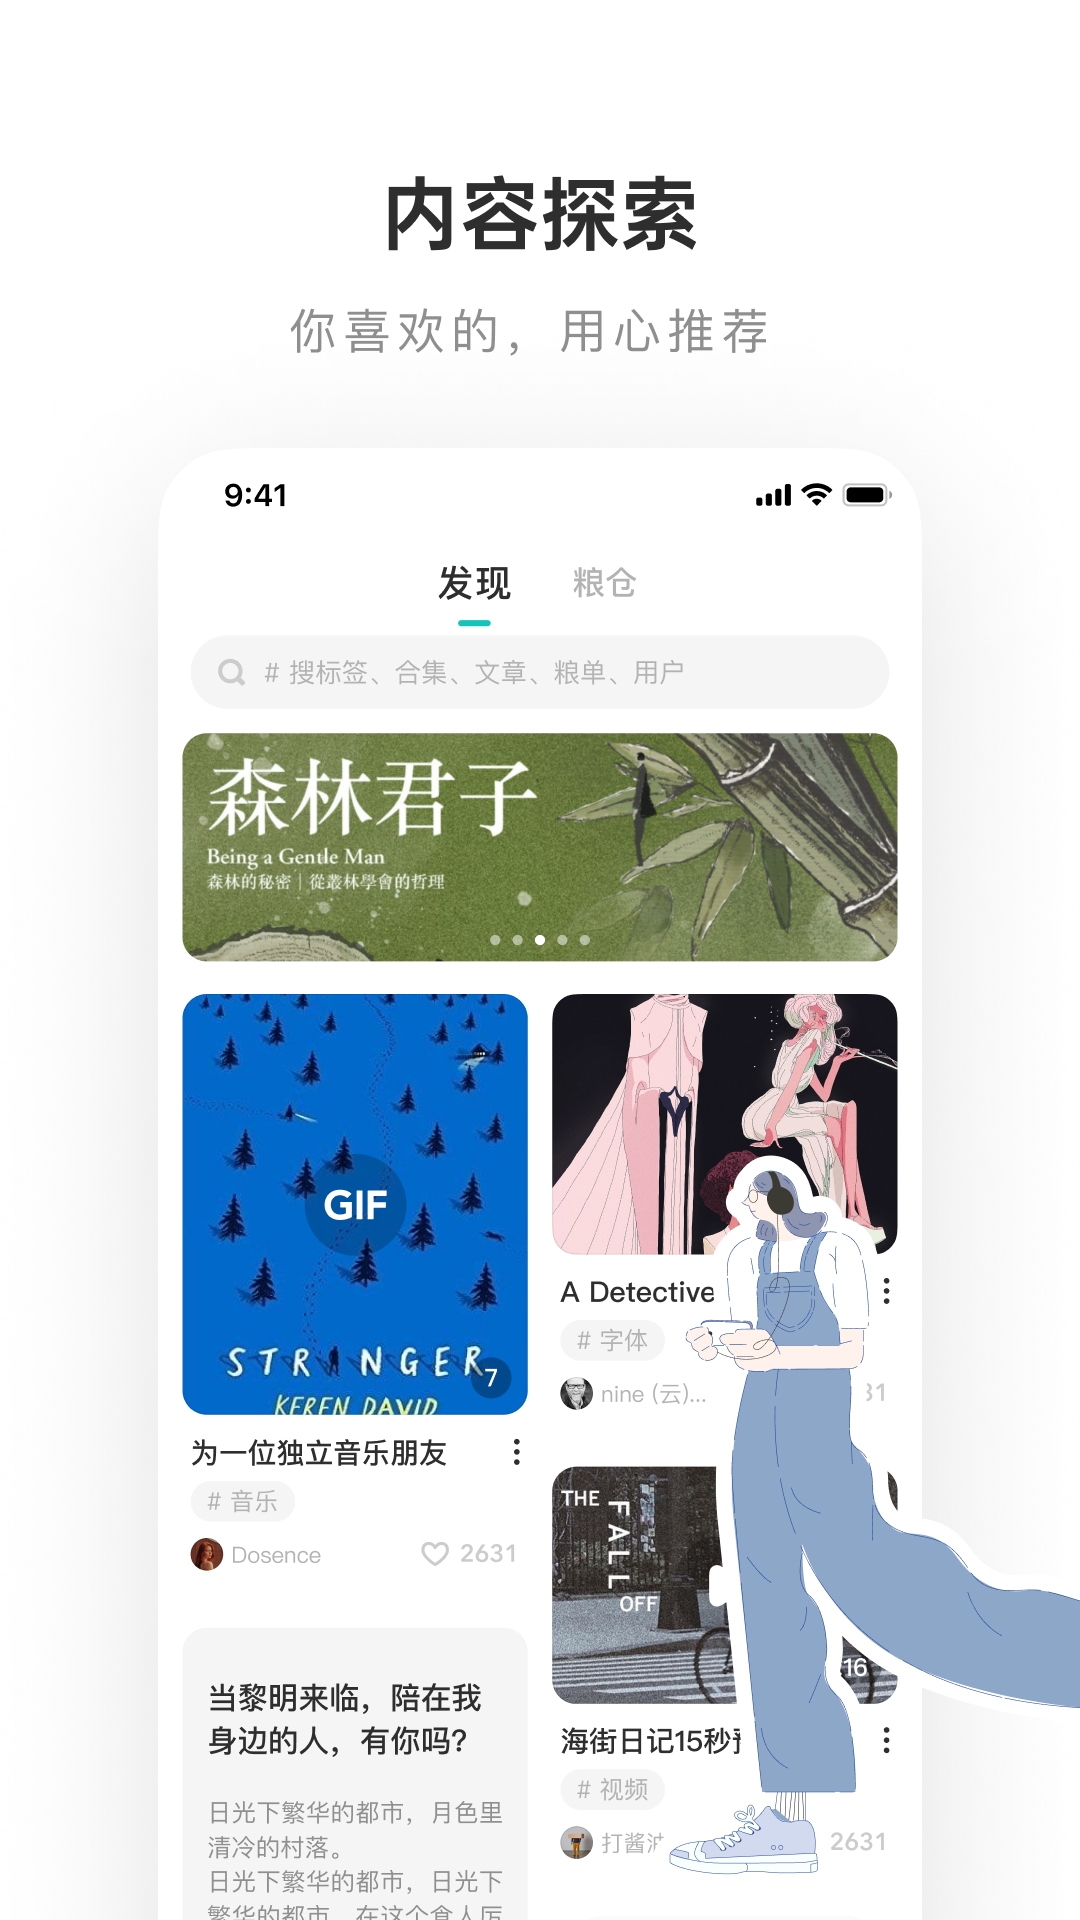 网易LOFTER App官方下载